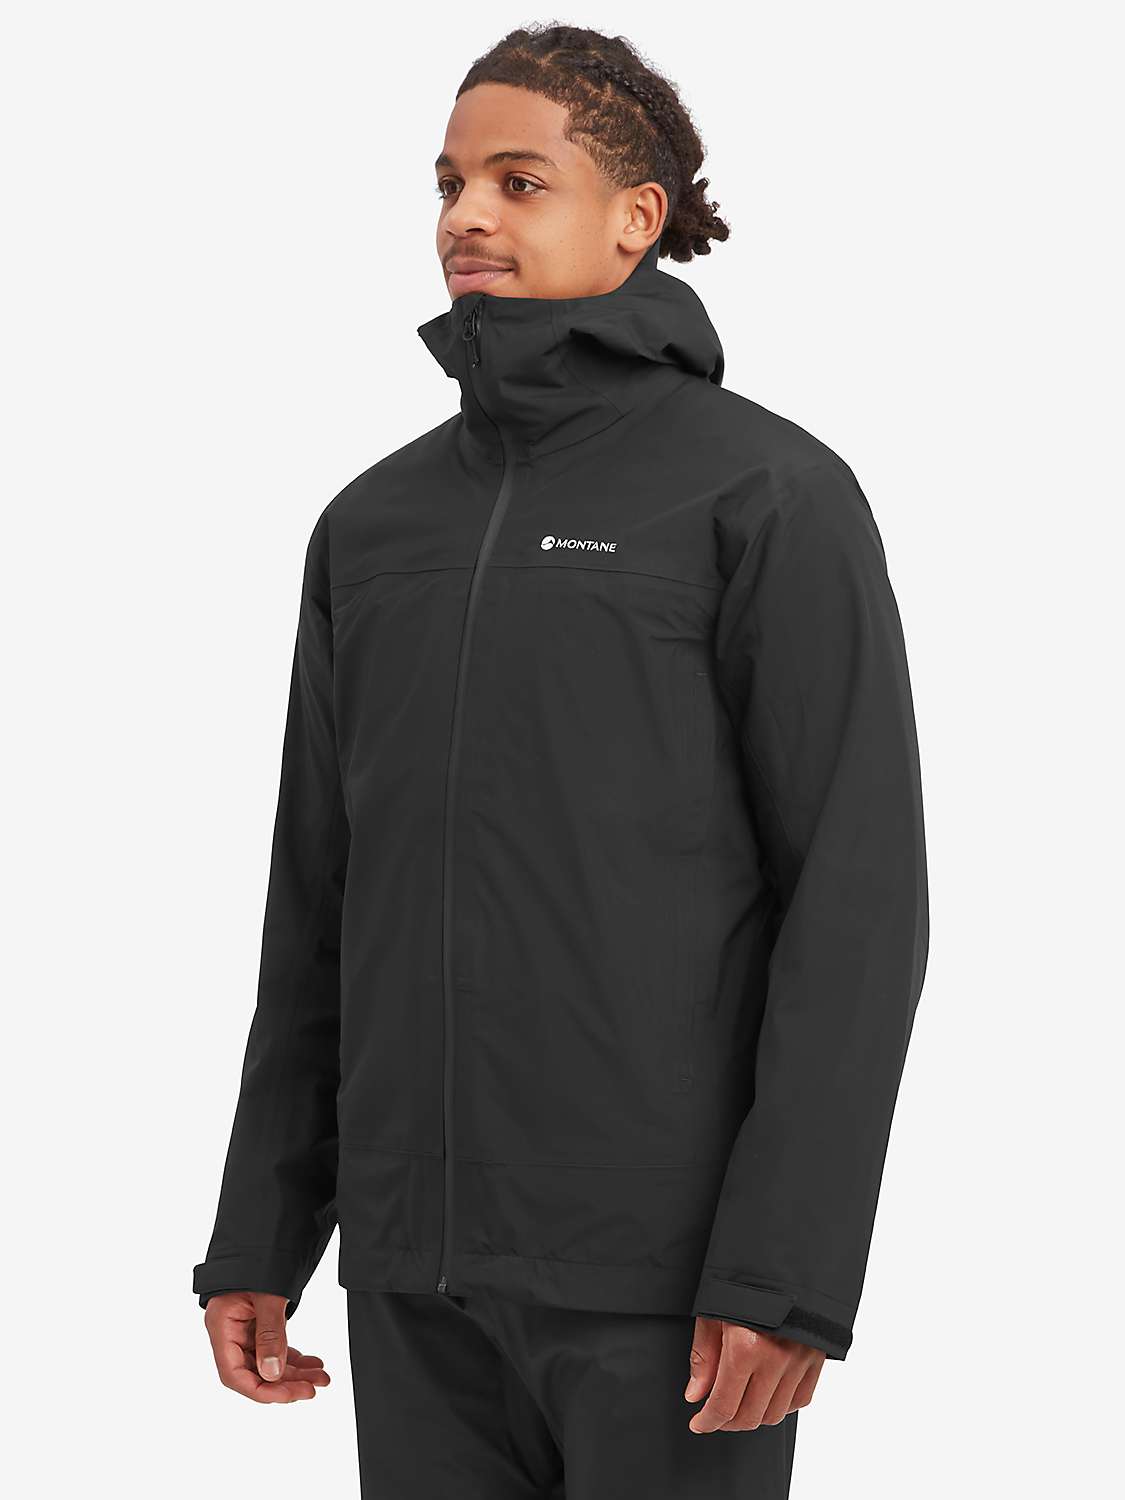 Buy Montane Solution Waterproof Jacket, Black Online at johnlewis.com